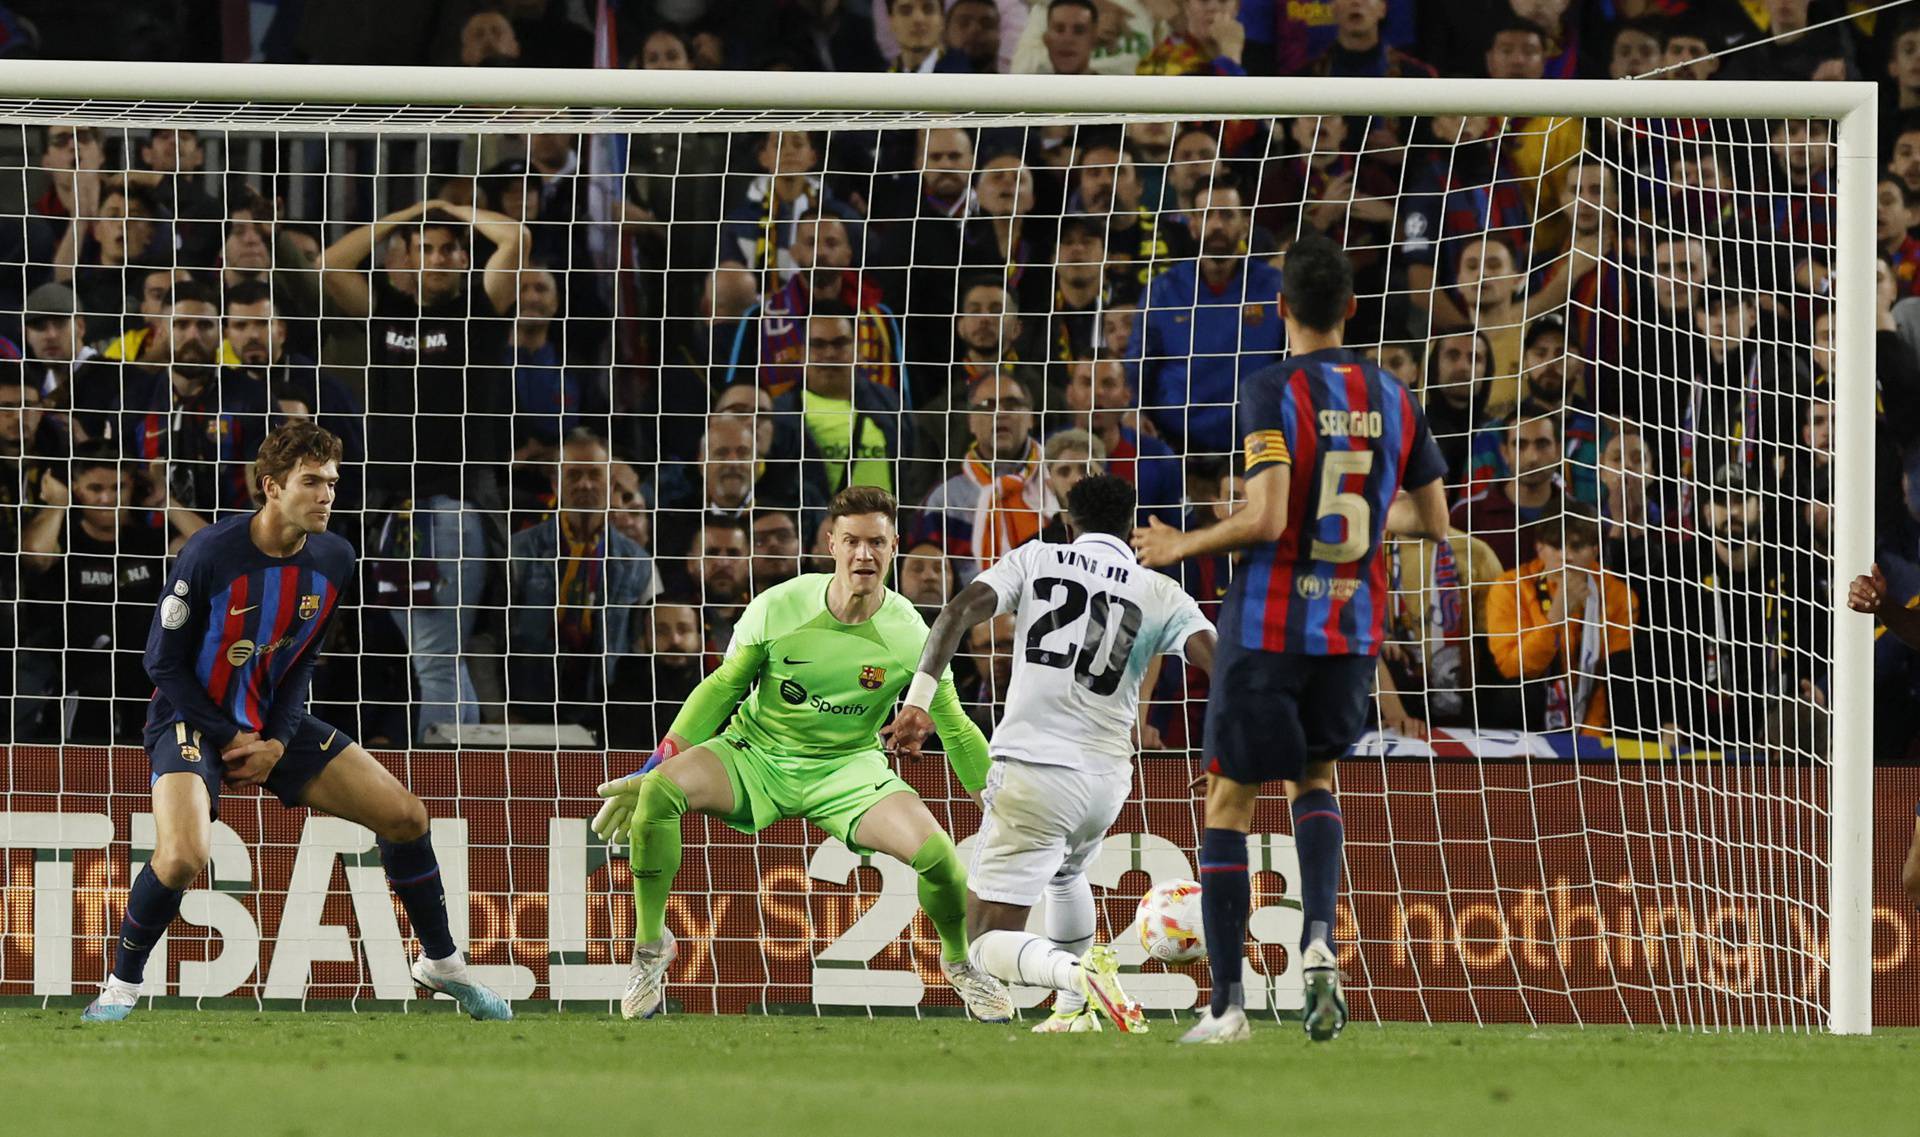 Copa del Rey - Semi Final - Second Leg - FC Barcelona v Real Madrid